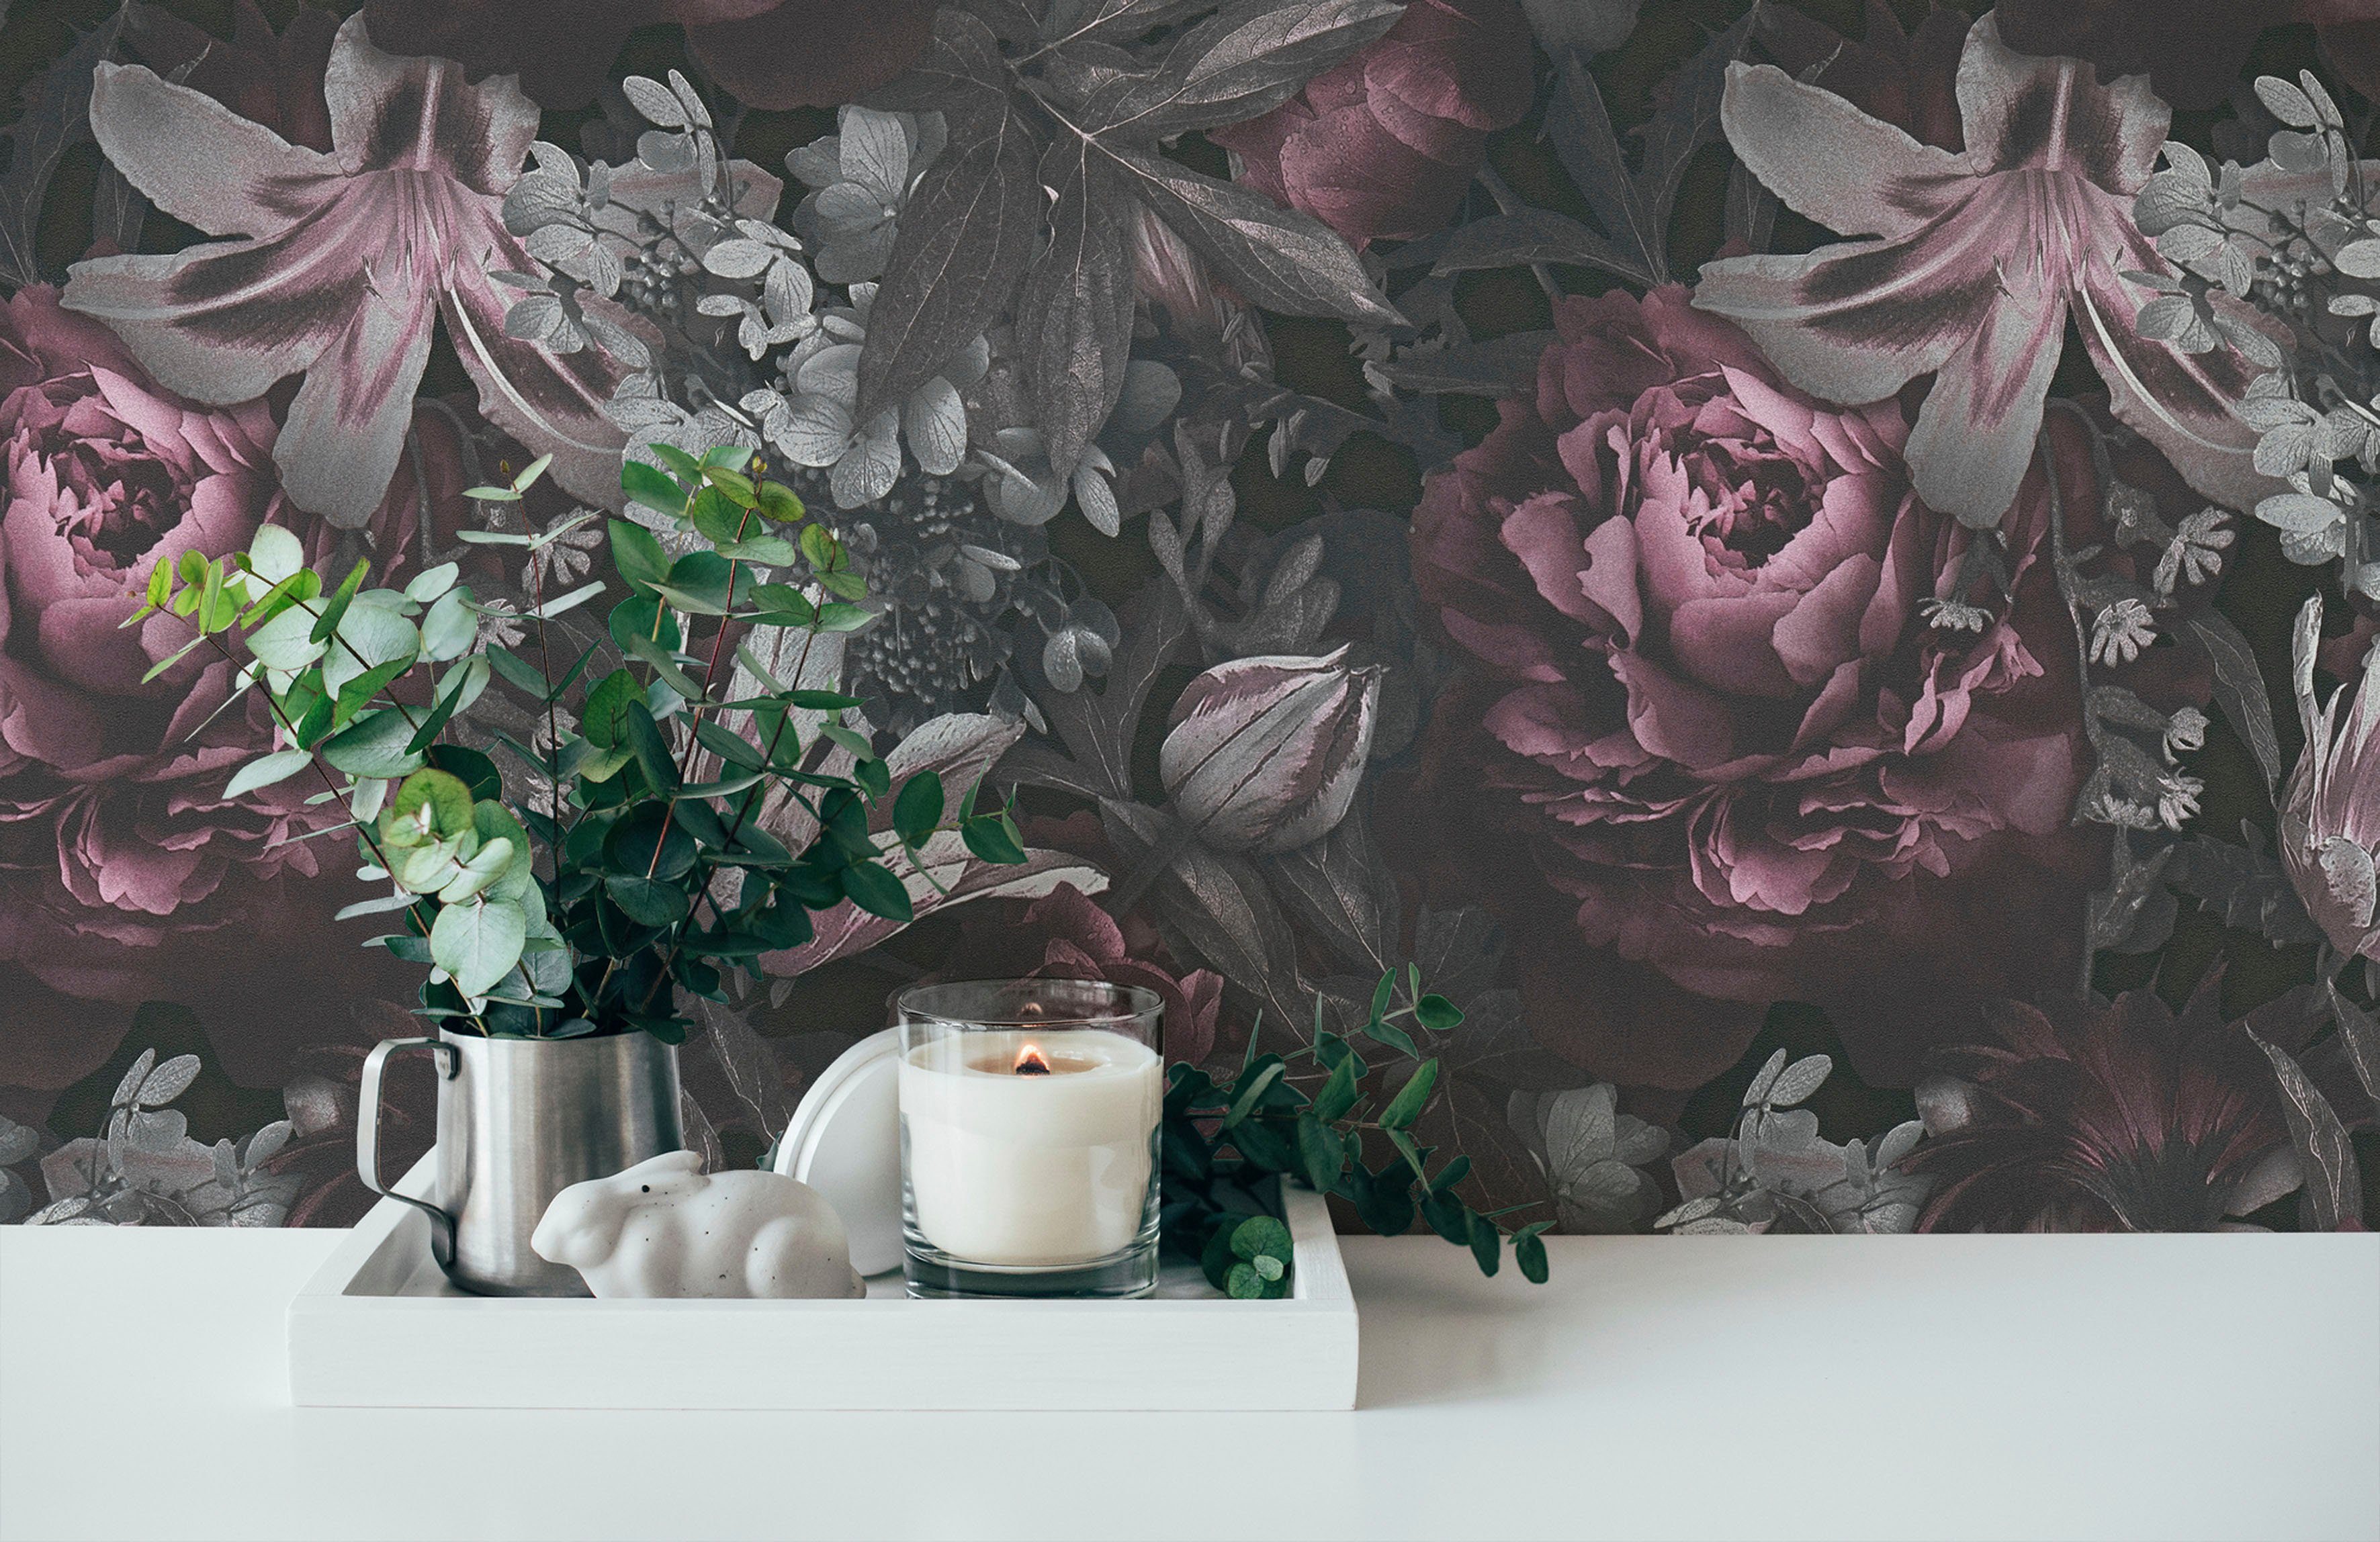 A.S. Création Vliestapete PintWalls Rosen matt, (1 St), glatt, Floral, Blumentapete rosa/grau/schwarz